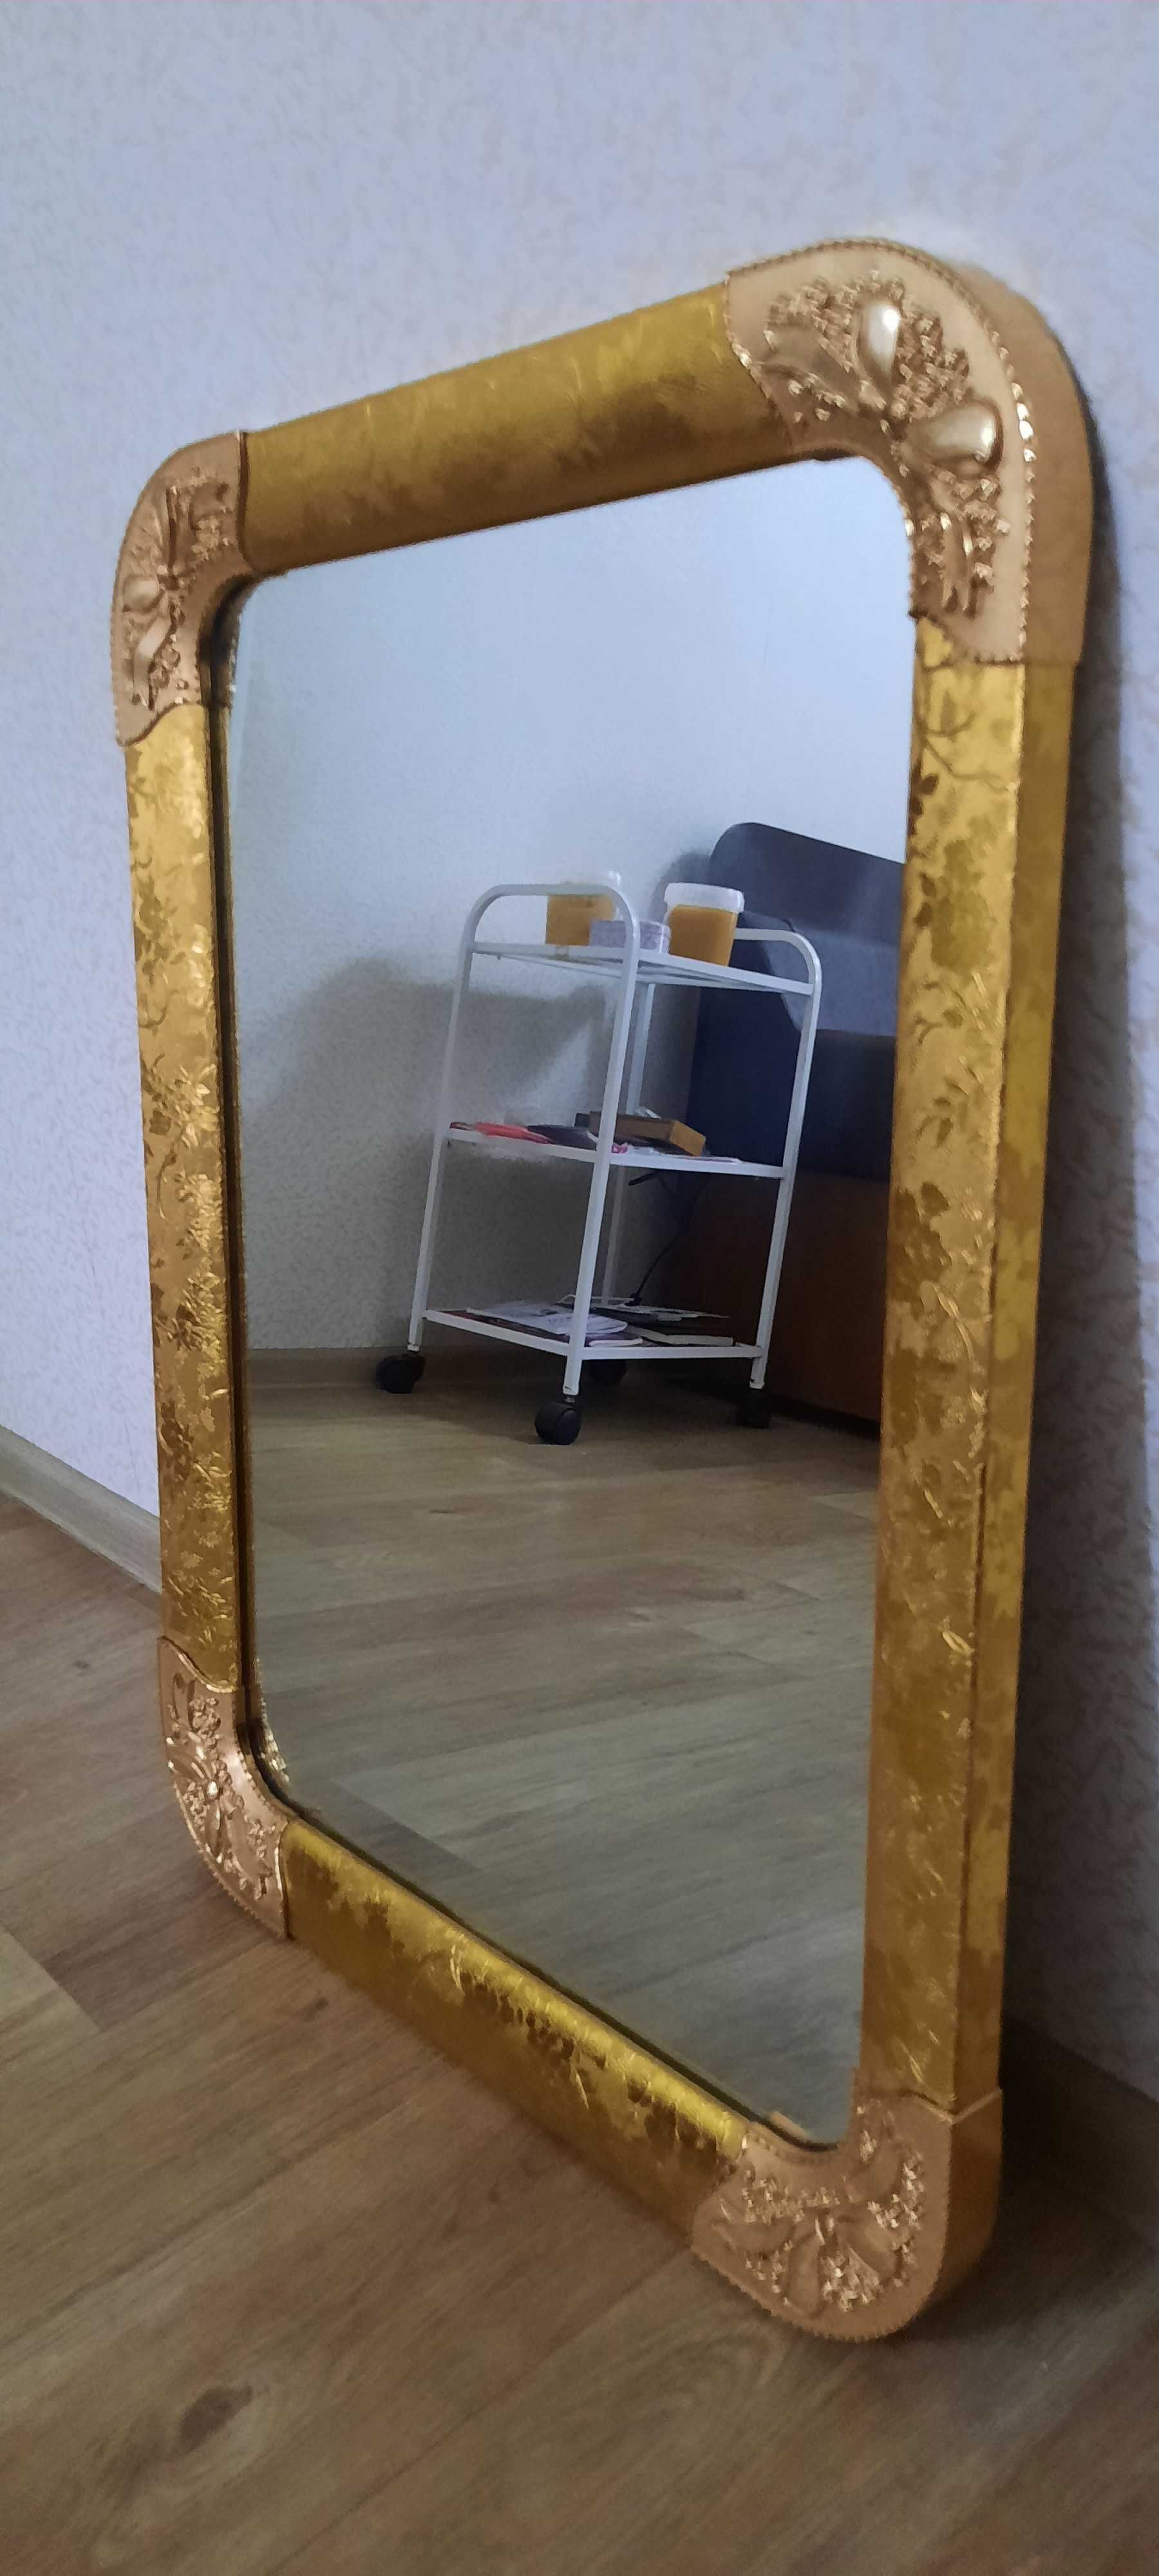 Продам зеркало в золотистой оправе.